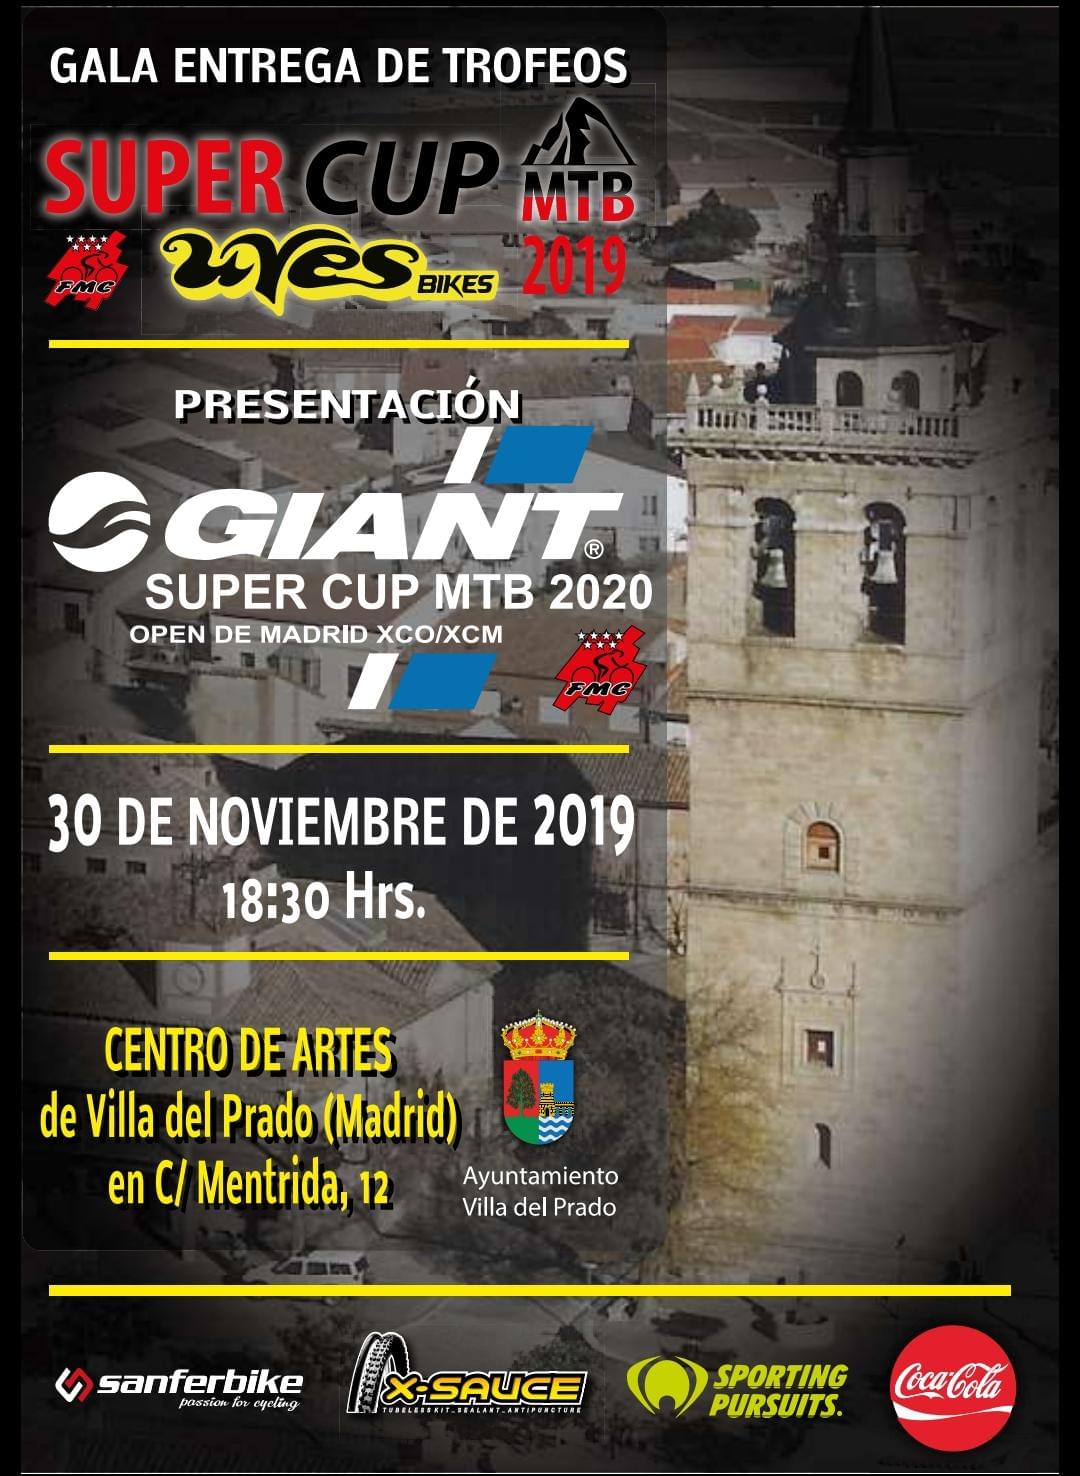 La Gala de entrega de trofeos de la Supercup MTB Uves Bikes, el 30 de Noviembre en Villa del Prado